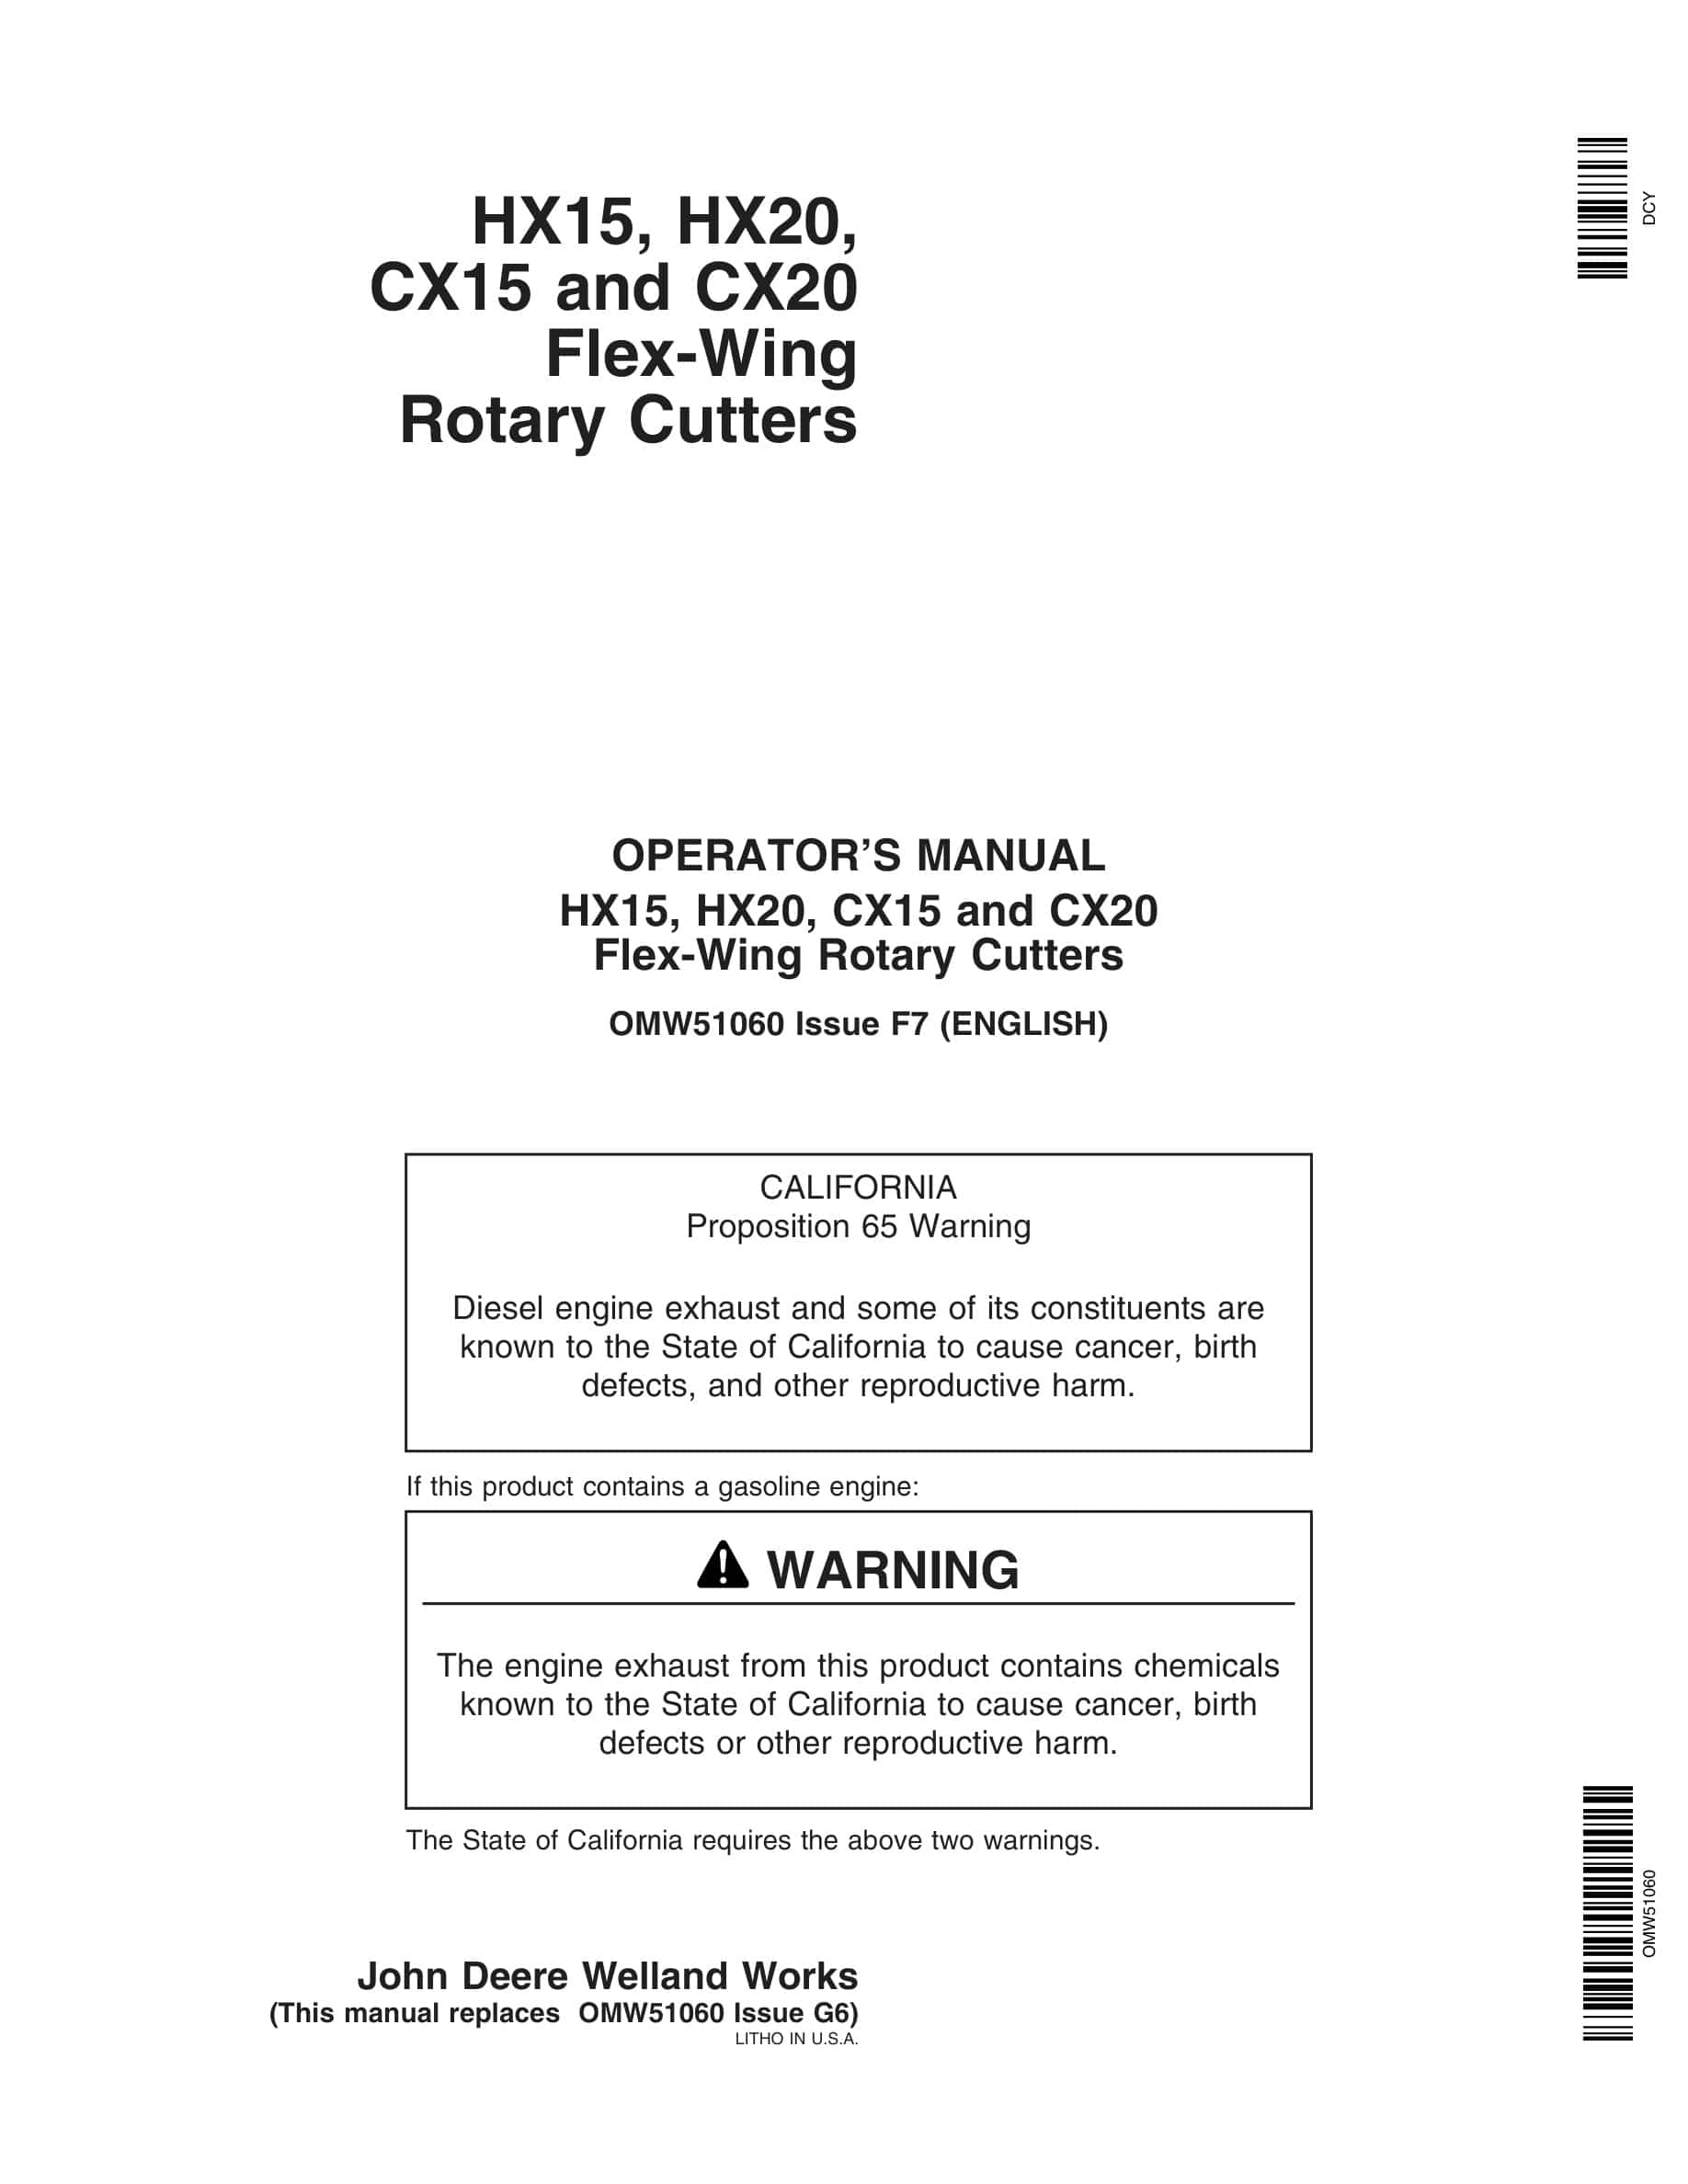 John Deere HX15, HX20, CX15 and CX20 Flex-Wing Rotary Cutter Operator Manual OMW51060-1